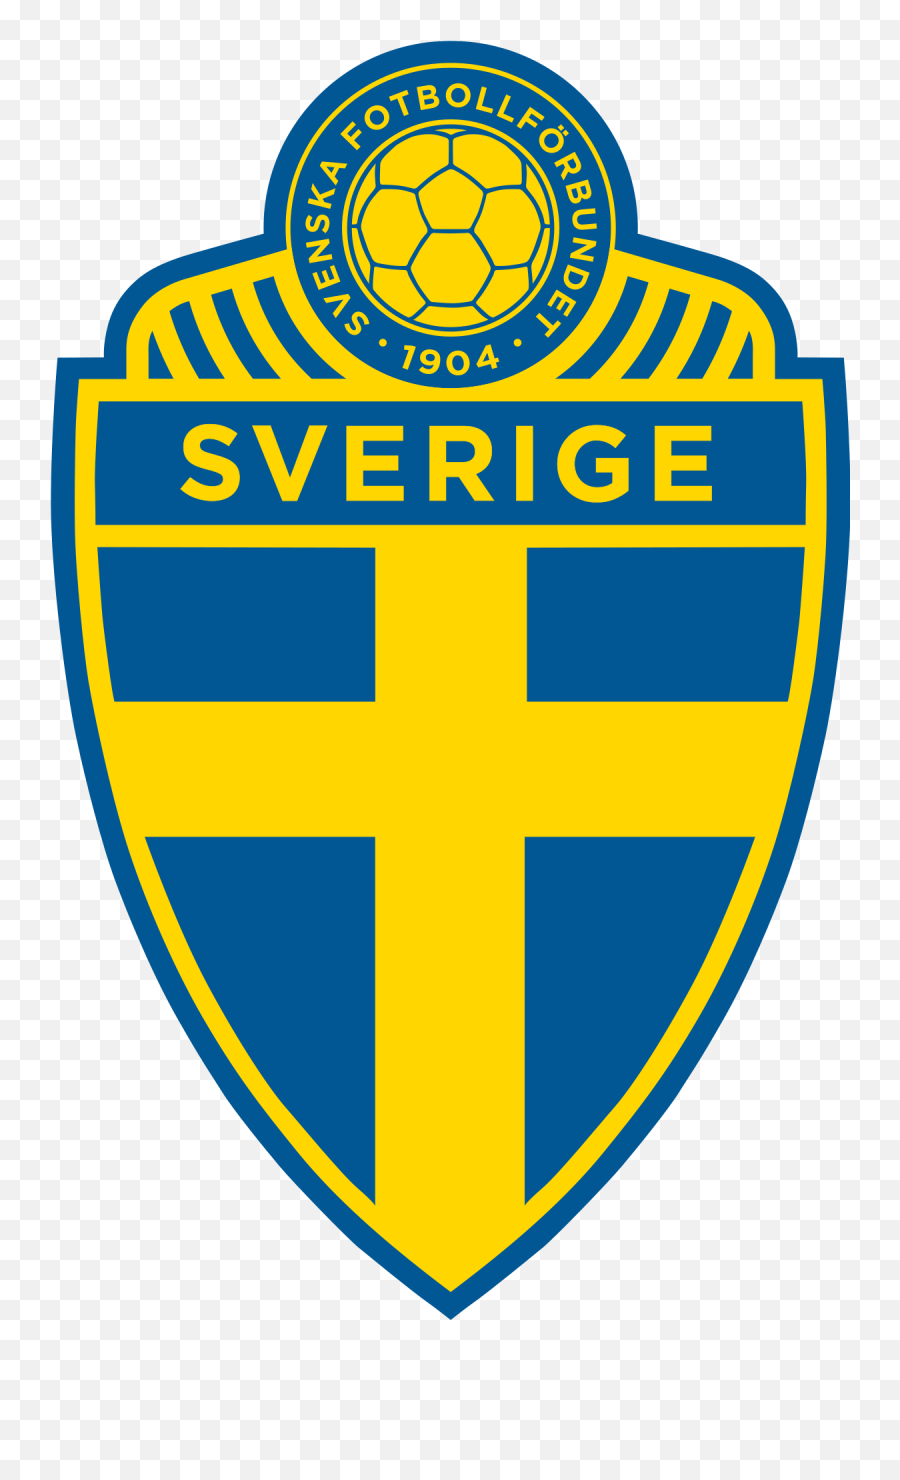 Switzerland Emoji Png 2 Png Image - Sweden Football Team Logo,Sweden Emoji